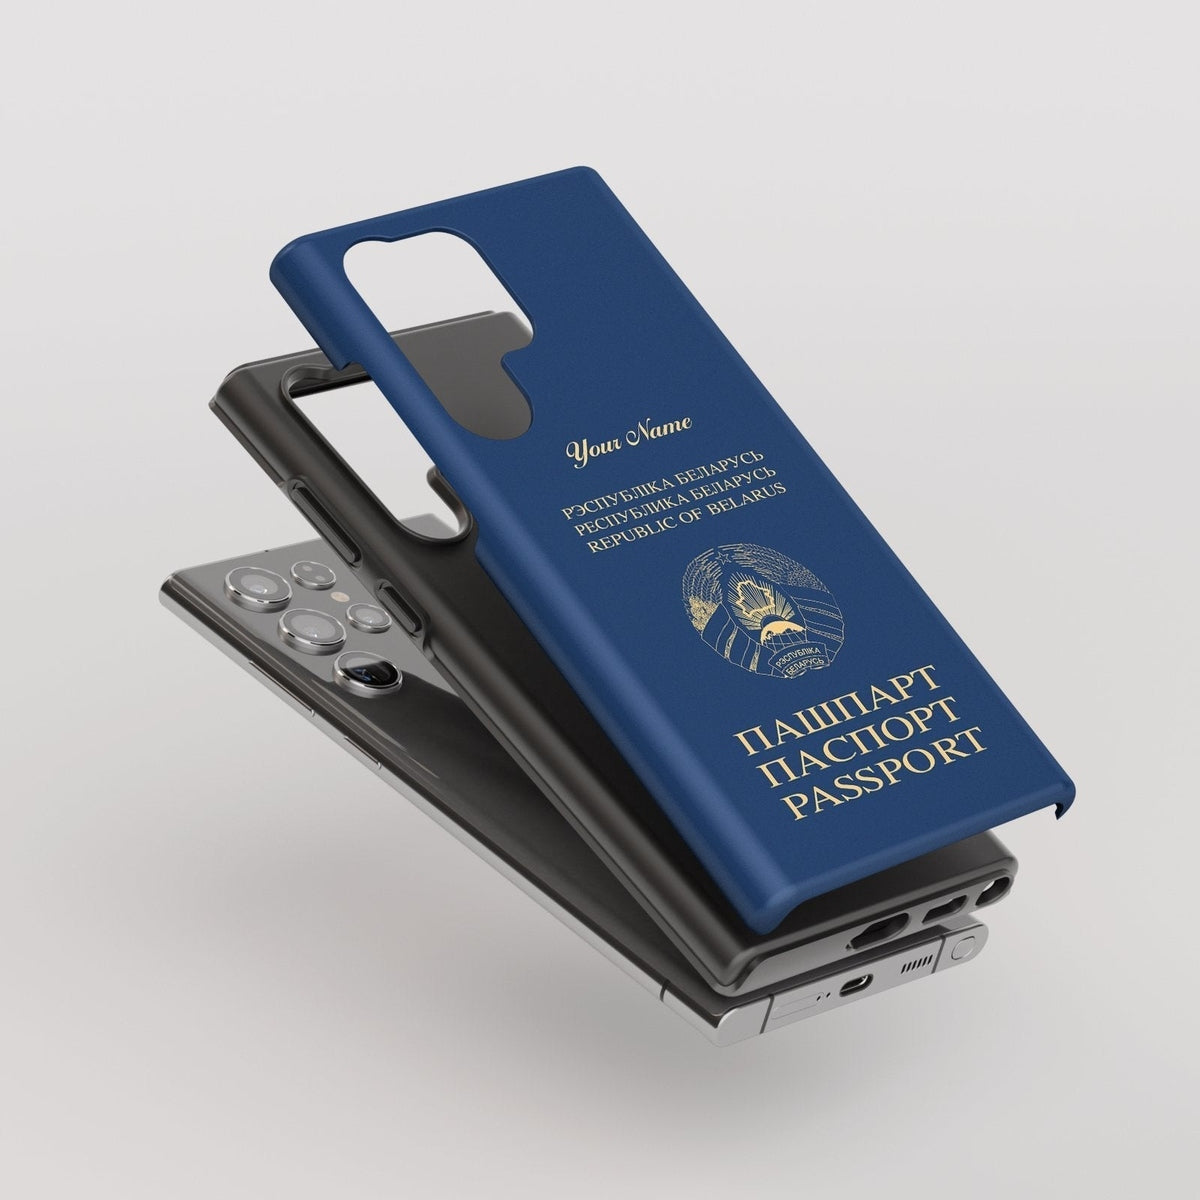 Belarus Passport - Samsung Galaxy S Case